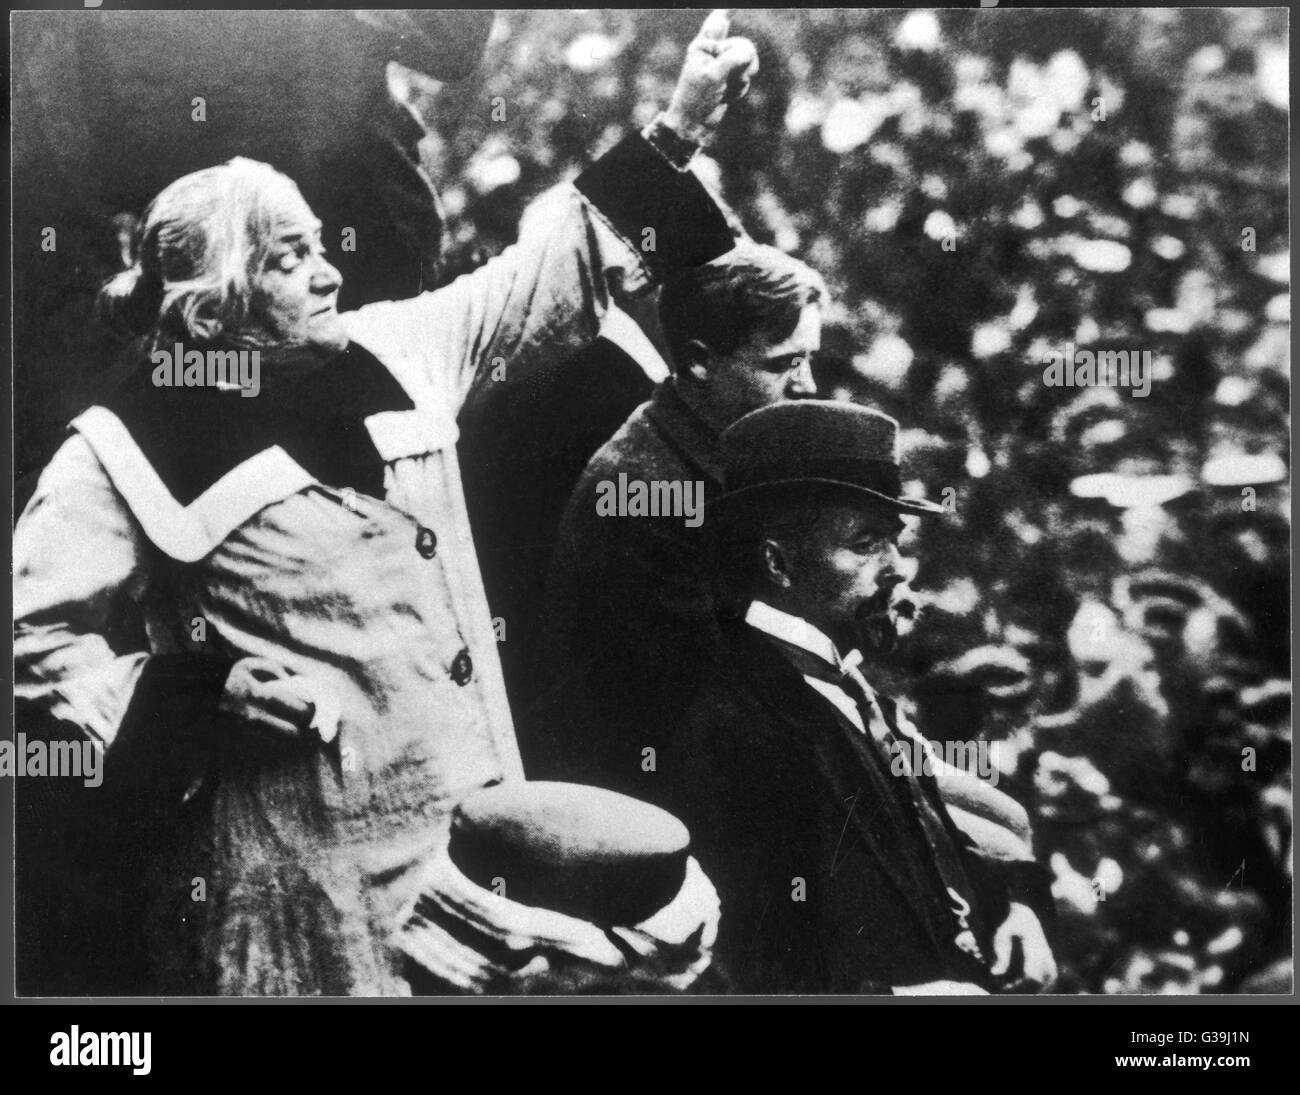 CLARA ZETKIN et féministe communiste allemand lors d'un rassemblement politique Date : 1857 - 1933 Banque D'Images